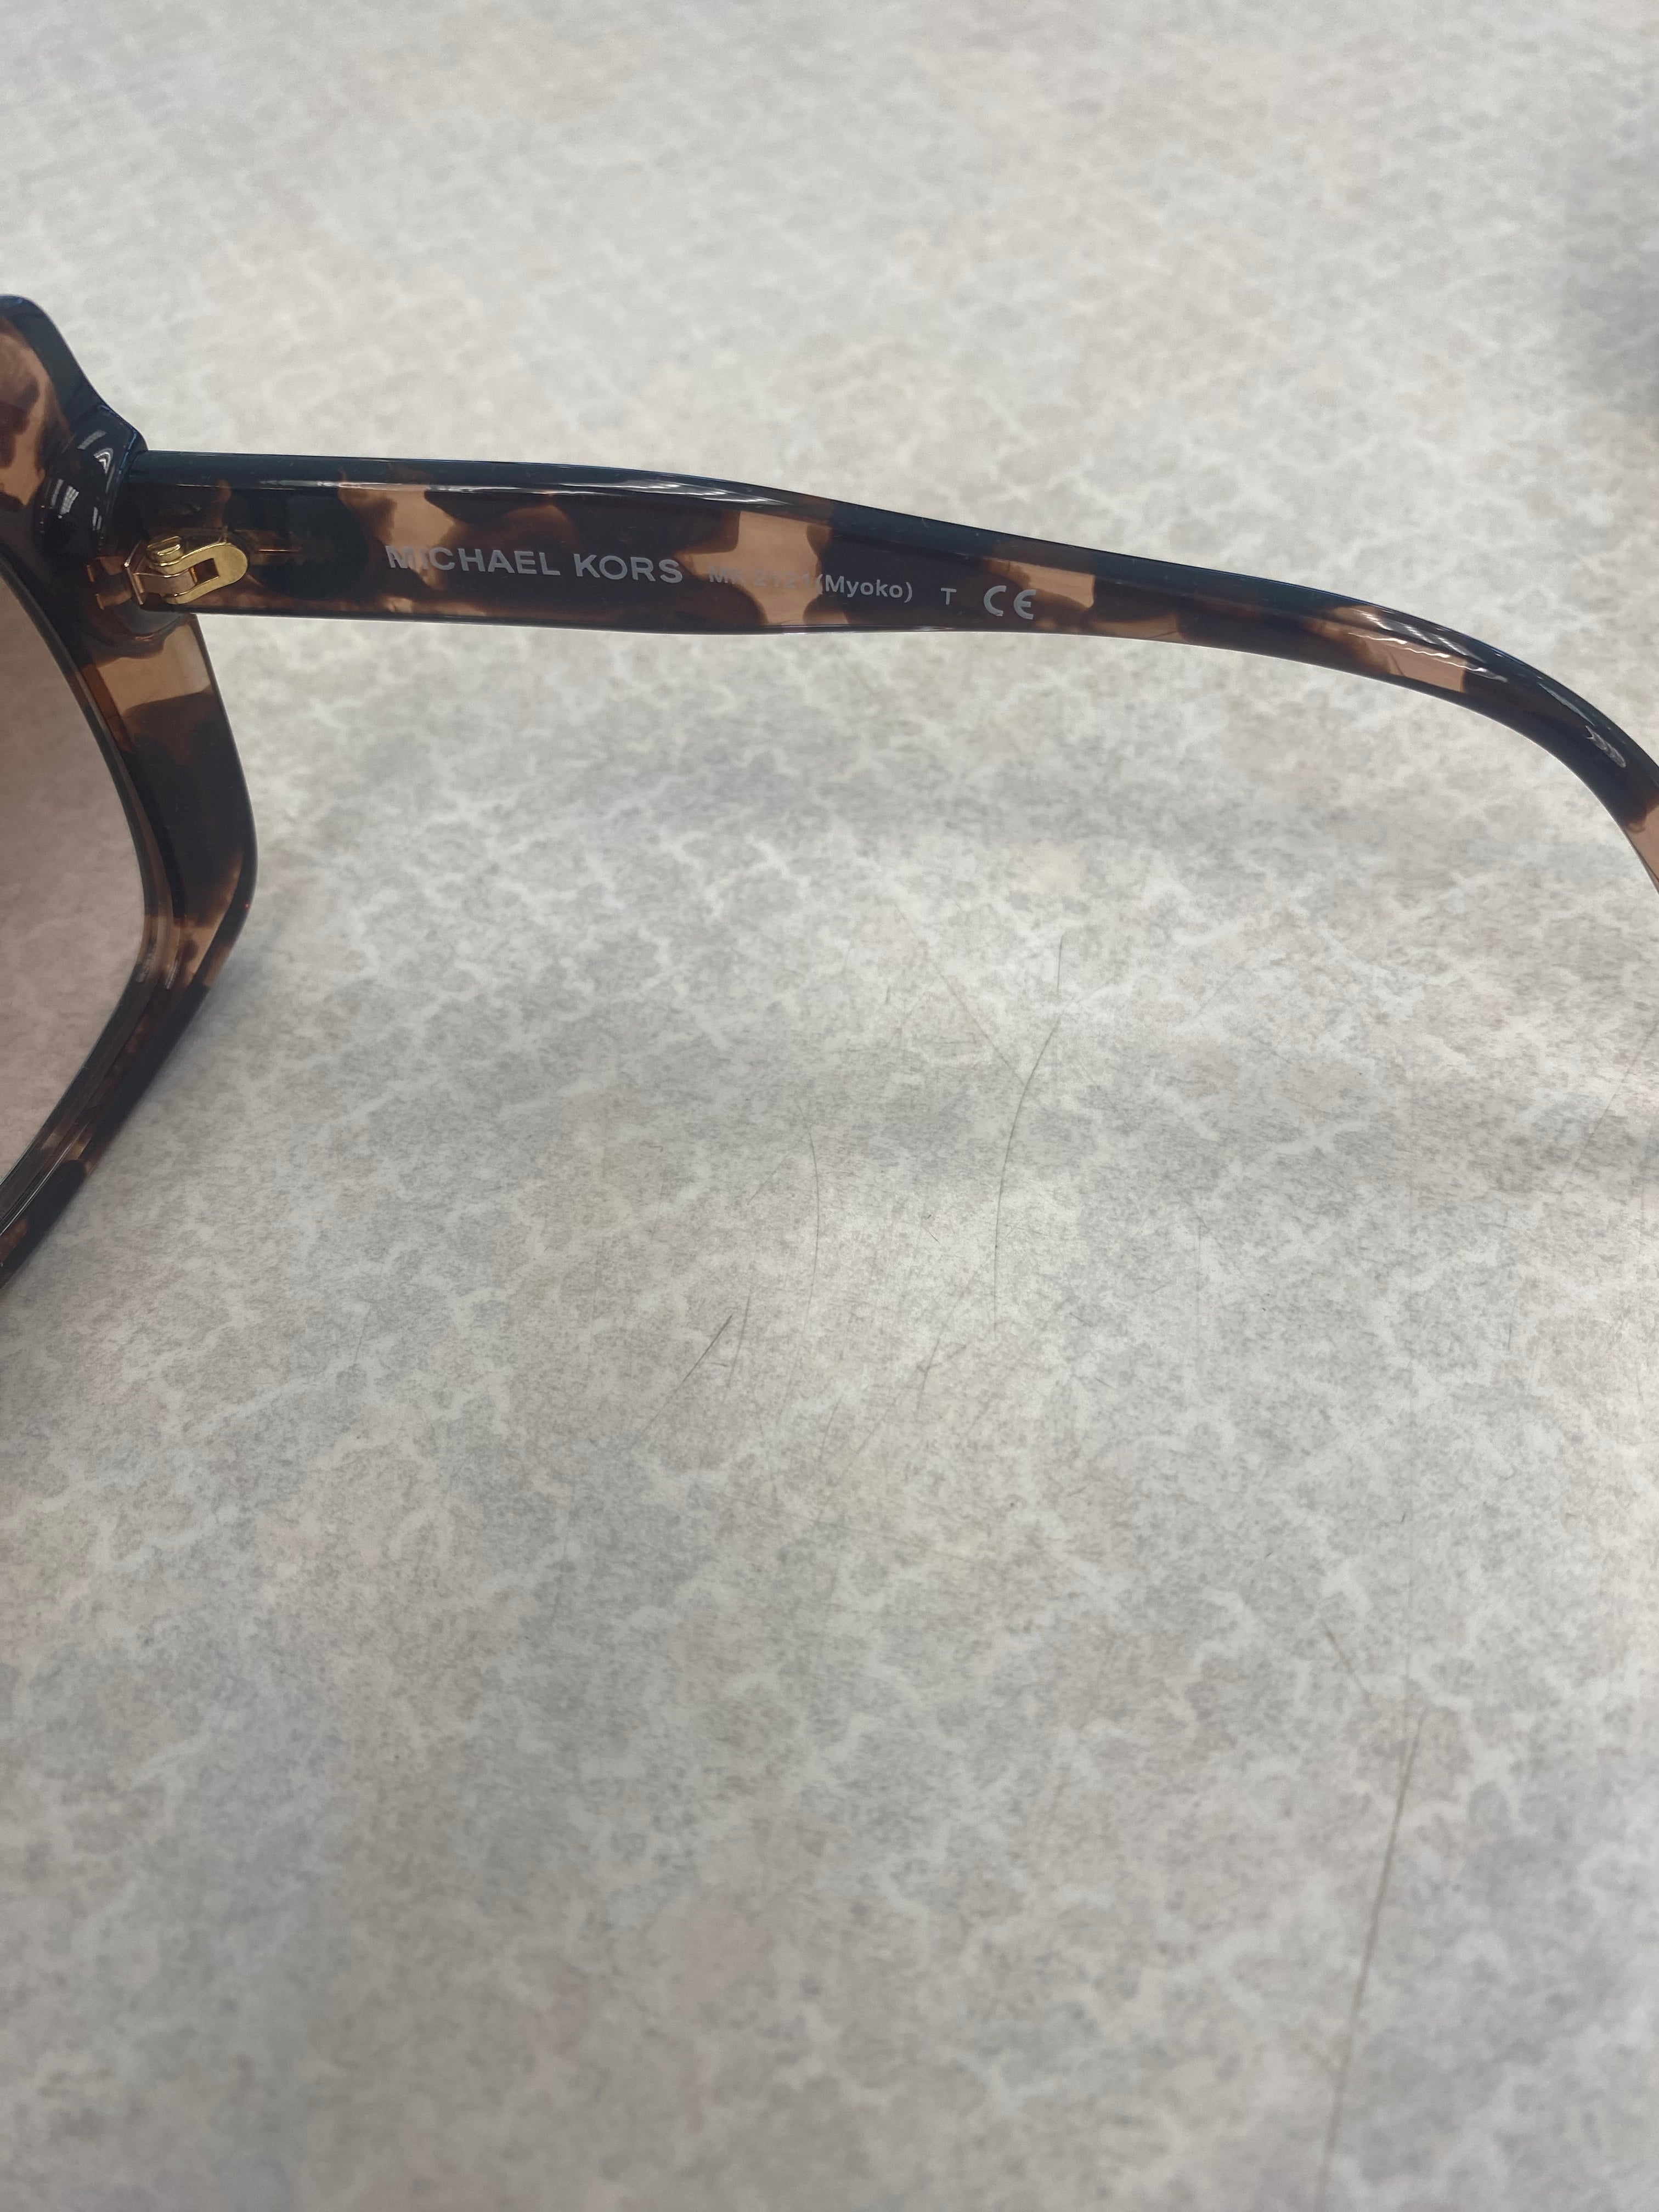 Michael Kors Zermatt MK 2121 Myoko Sunglasses Rose Gold Brand New  eBay